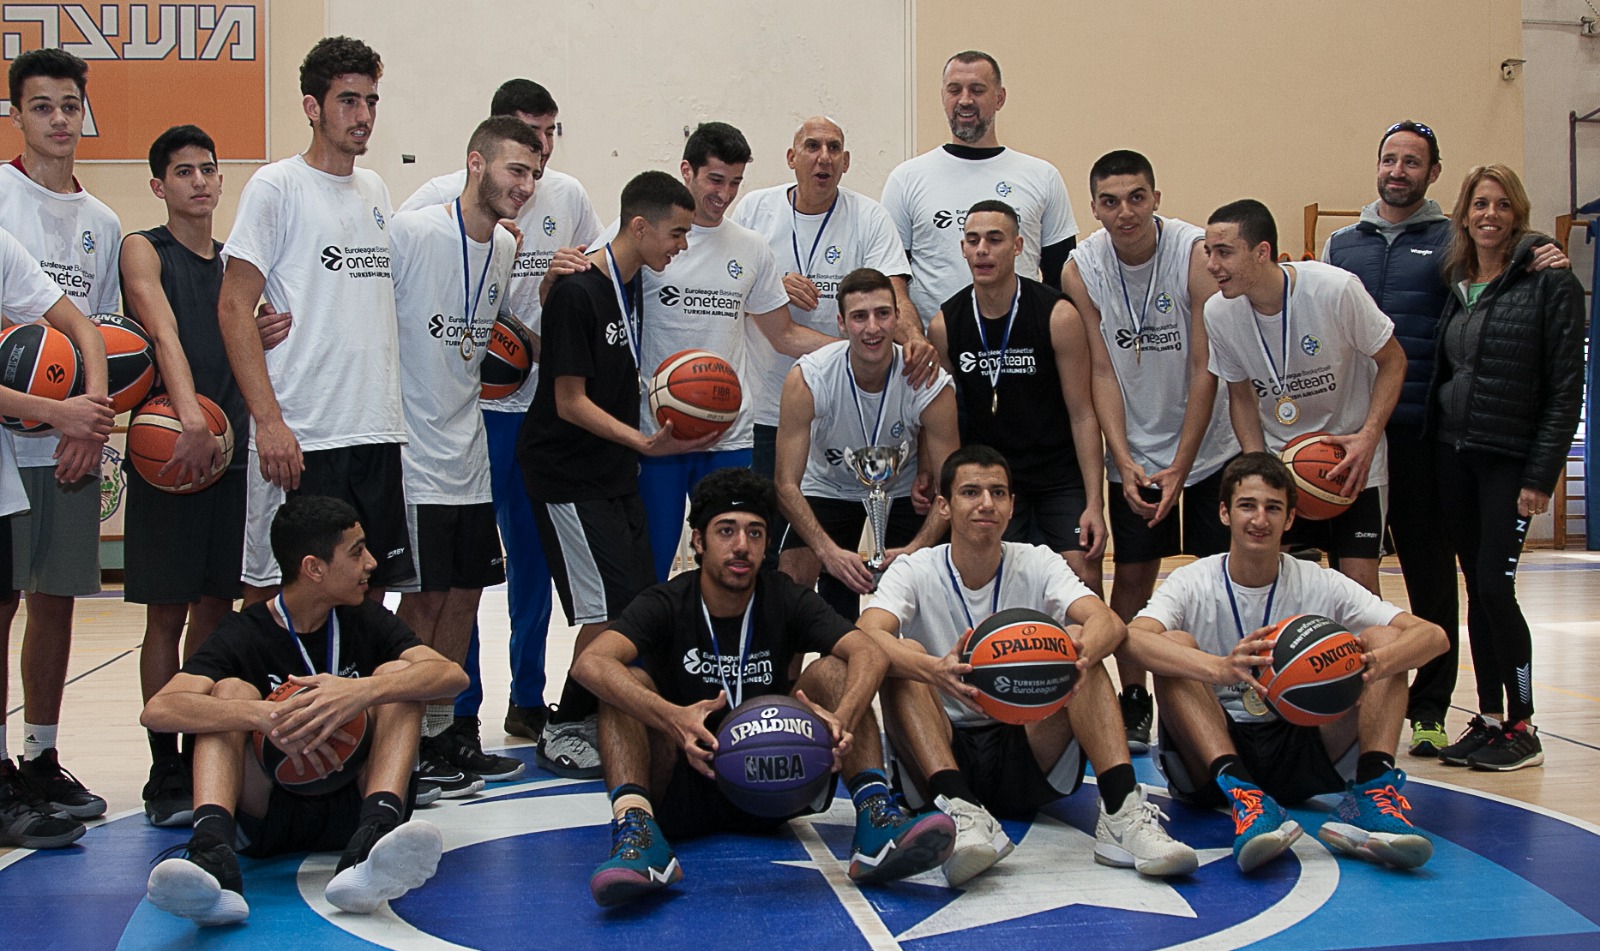 תלמידי האקדמיה לכדורסל בכפר הנוער עיינות מתאמנים ביחד